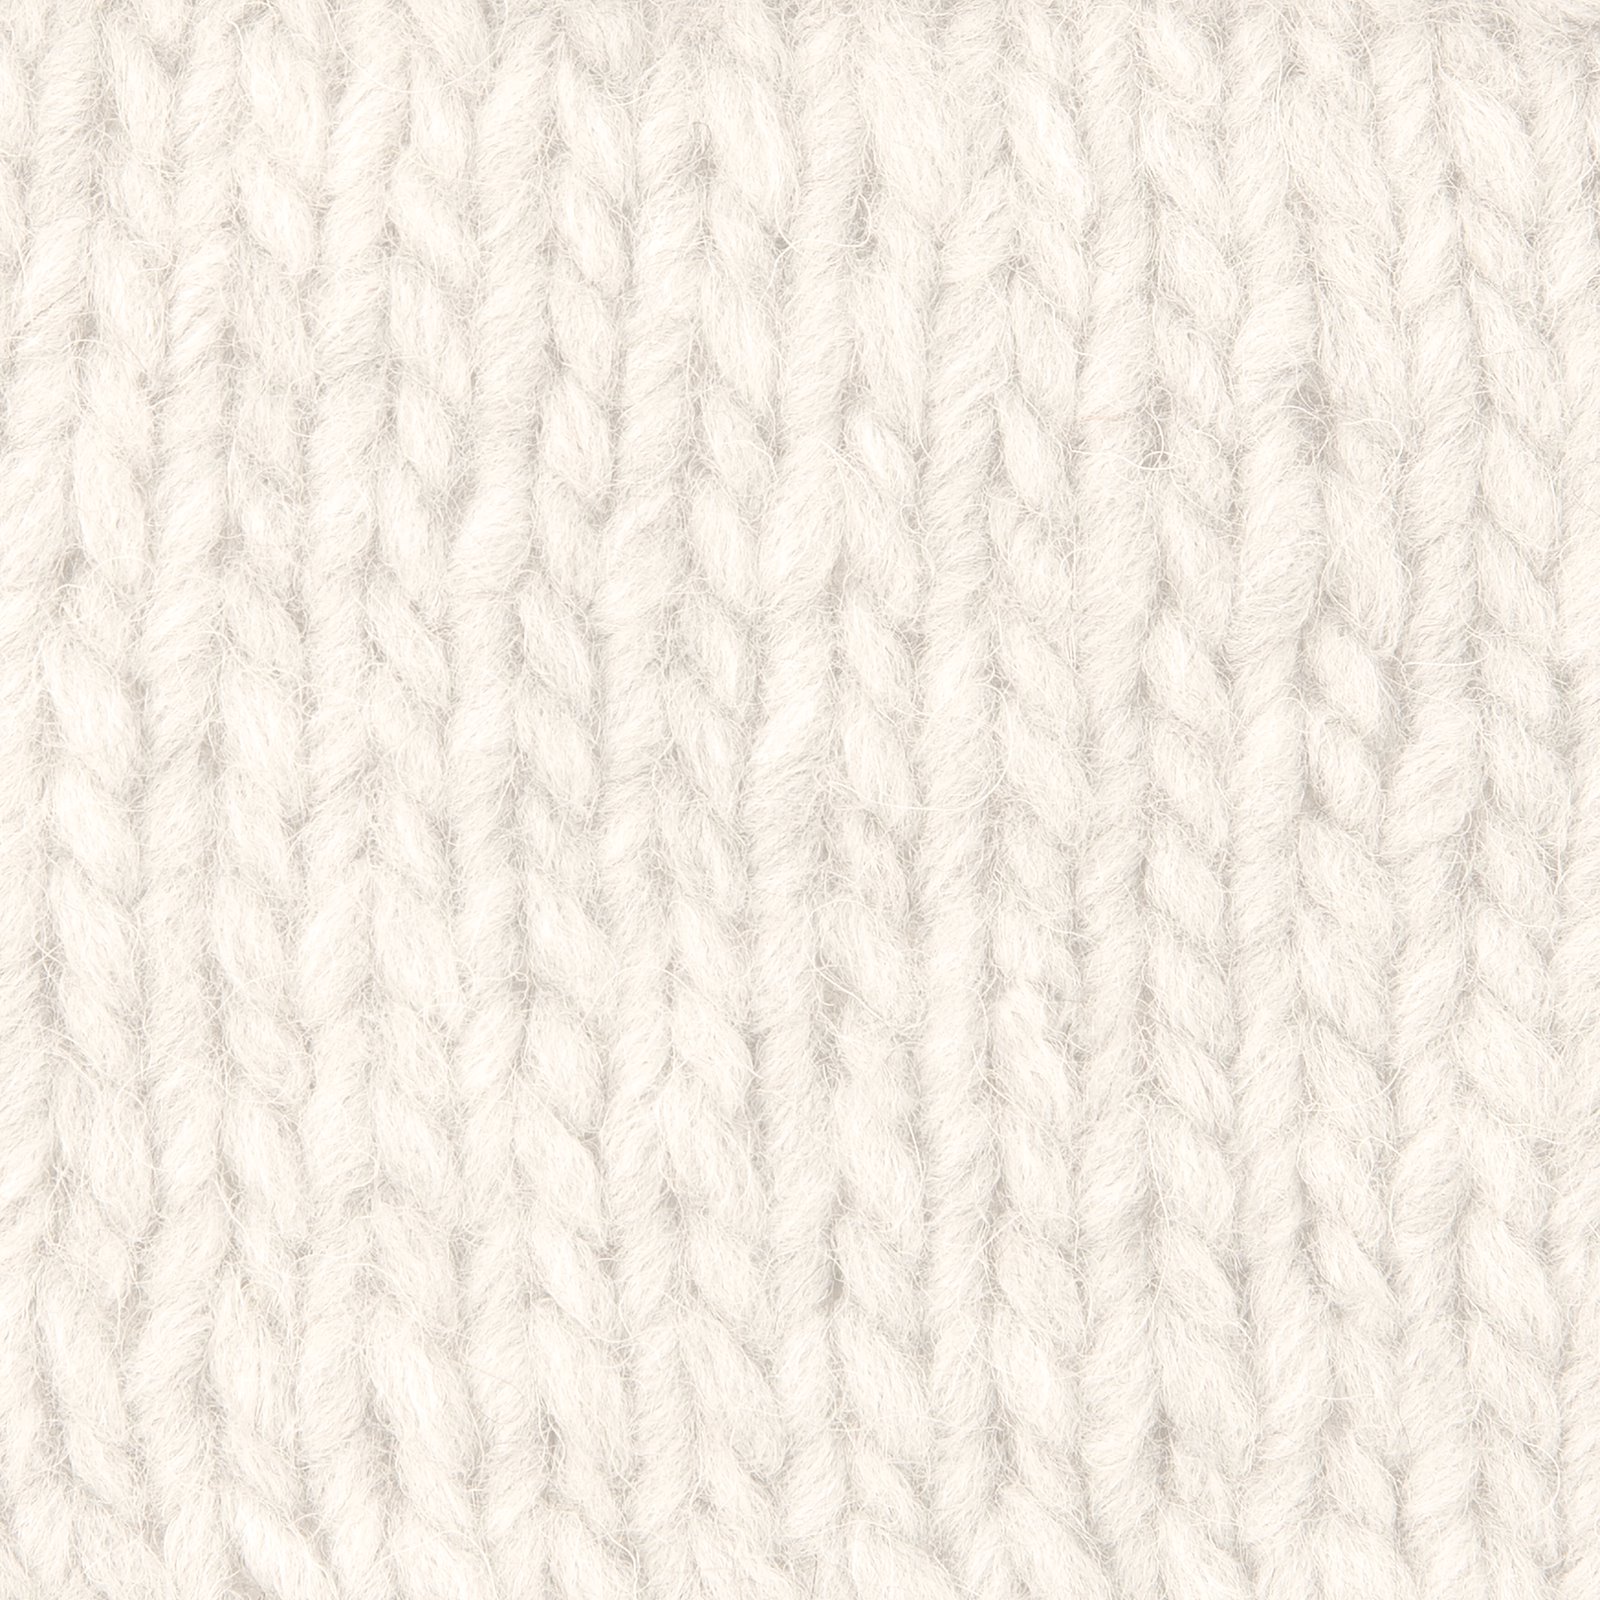 FRAYA, blandingsgarn med uld "Comfy", hvid 90054802_sskit